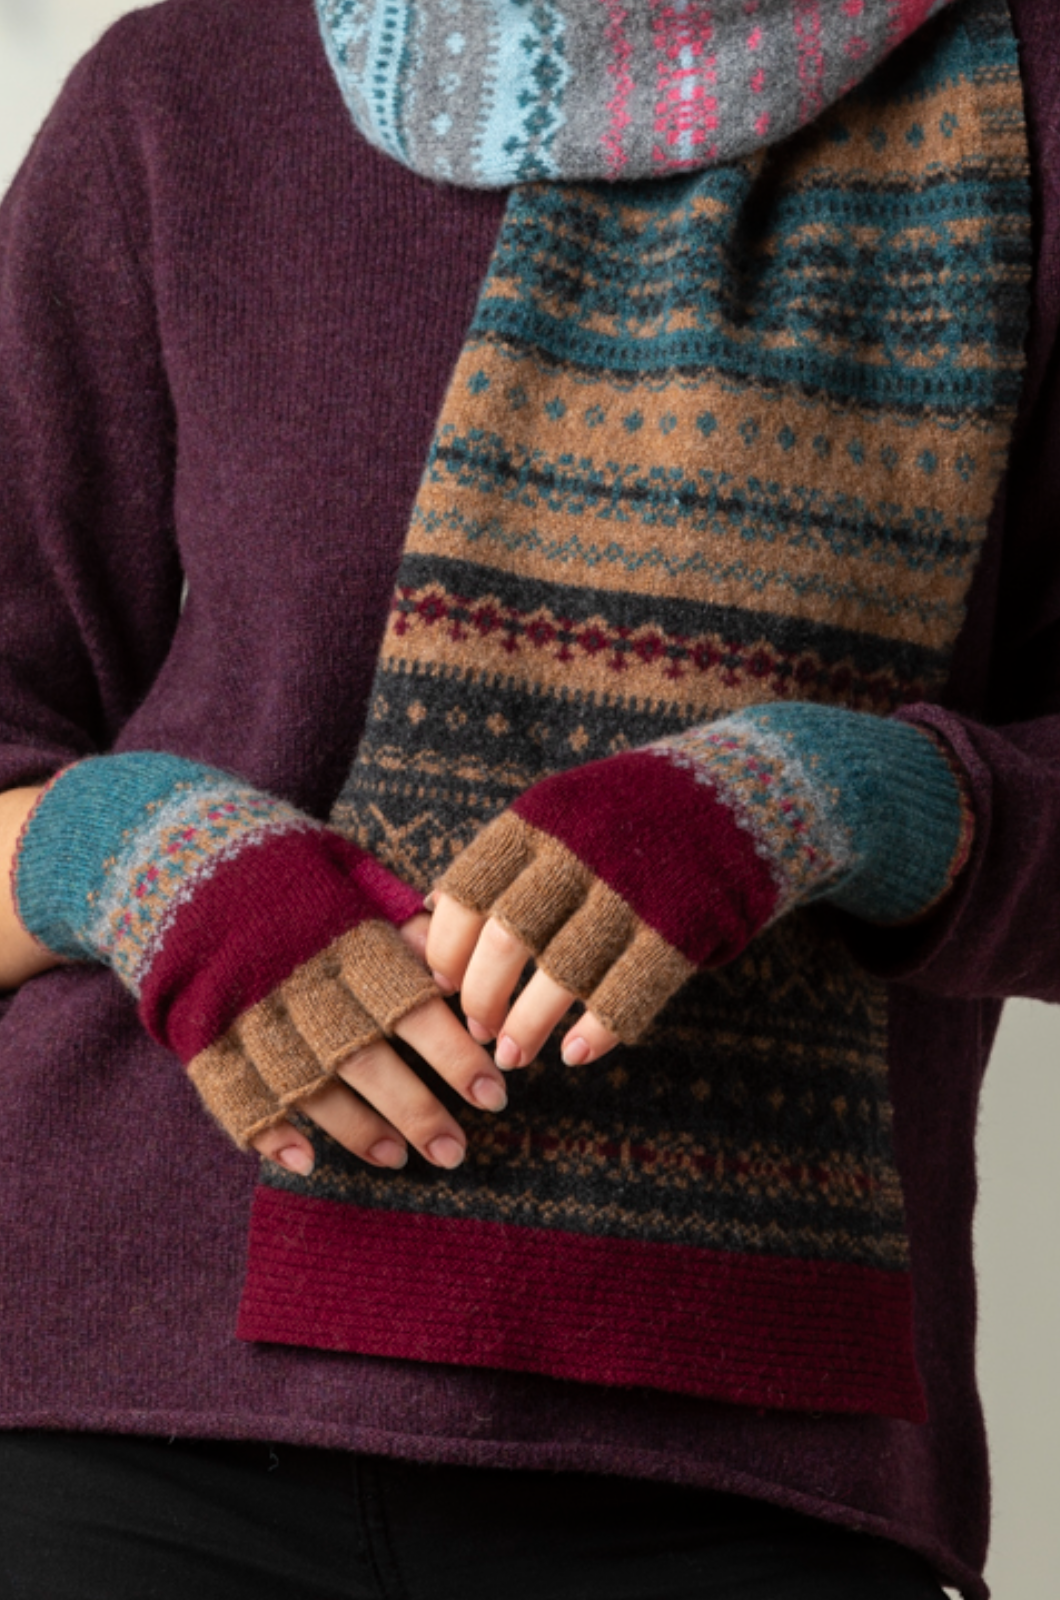 Eribe Knitwear Saint Alloa Fingerless Gloves in Velvet